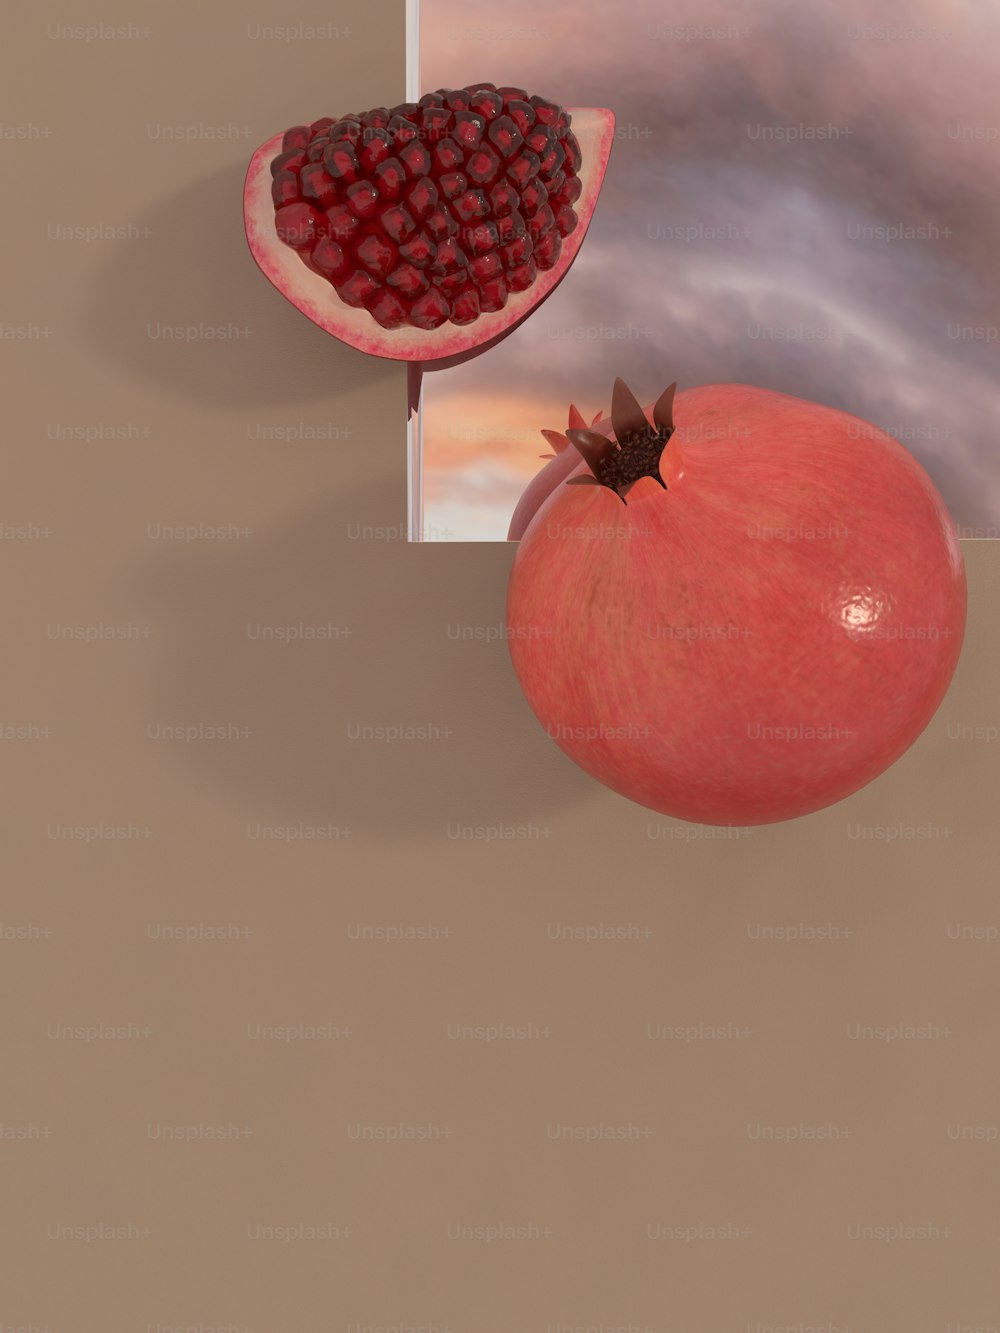 uma imagem de uma romã e um pedaço de fruta